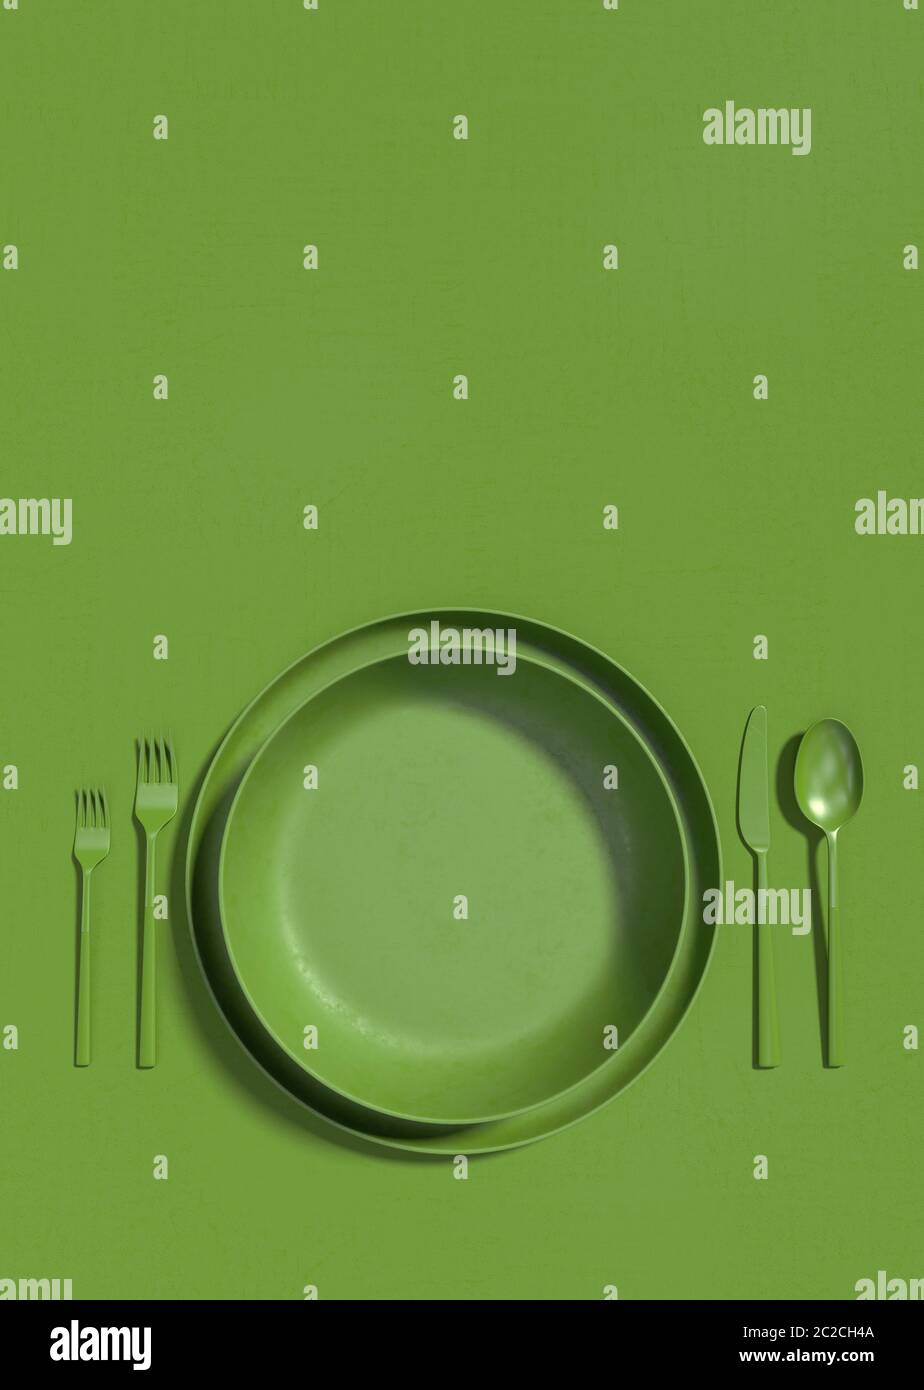 Leeren Sie grünen Teller und Besteck auf einem grünen Tisch. Monochrome vertikale Abbildung eines Tisches, der auf einer Draufsicht dient. Speicherplatz kopieren. 3D-Rendering Stockfoto